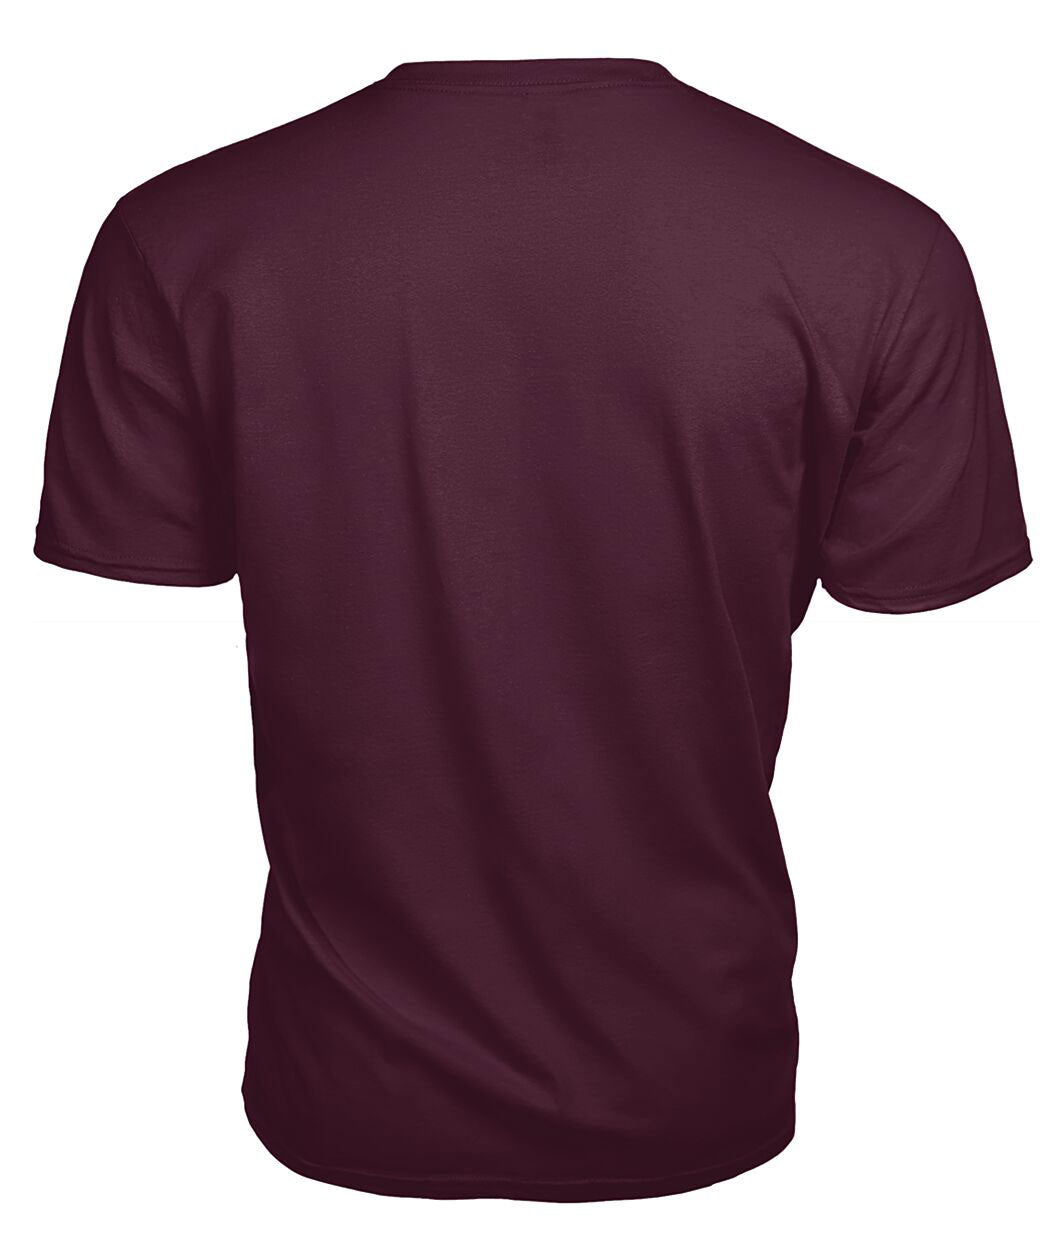 MacFie Tartan Crest 2D T-shirt - Blood Runs Through My Veins Style